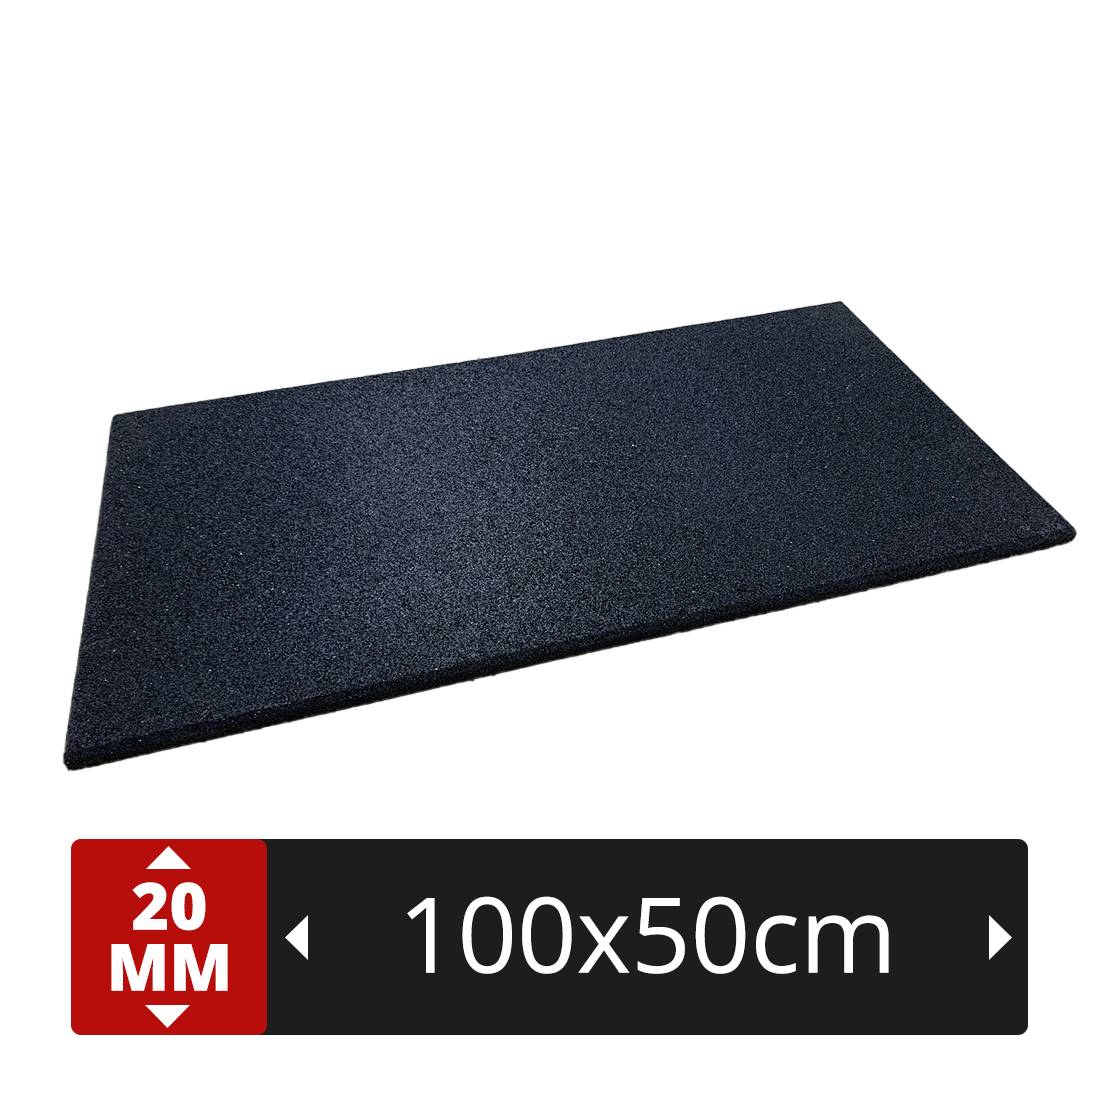 optimisez votre gym avec la demi dalle en caoutchouc grain fin noir – un revêtement de sol sportif de 50 x 100 cm – 20 mm d'Épaisseur